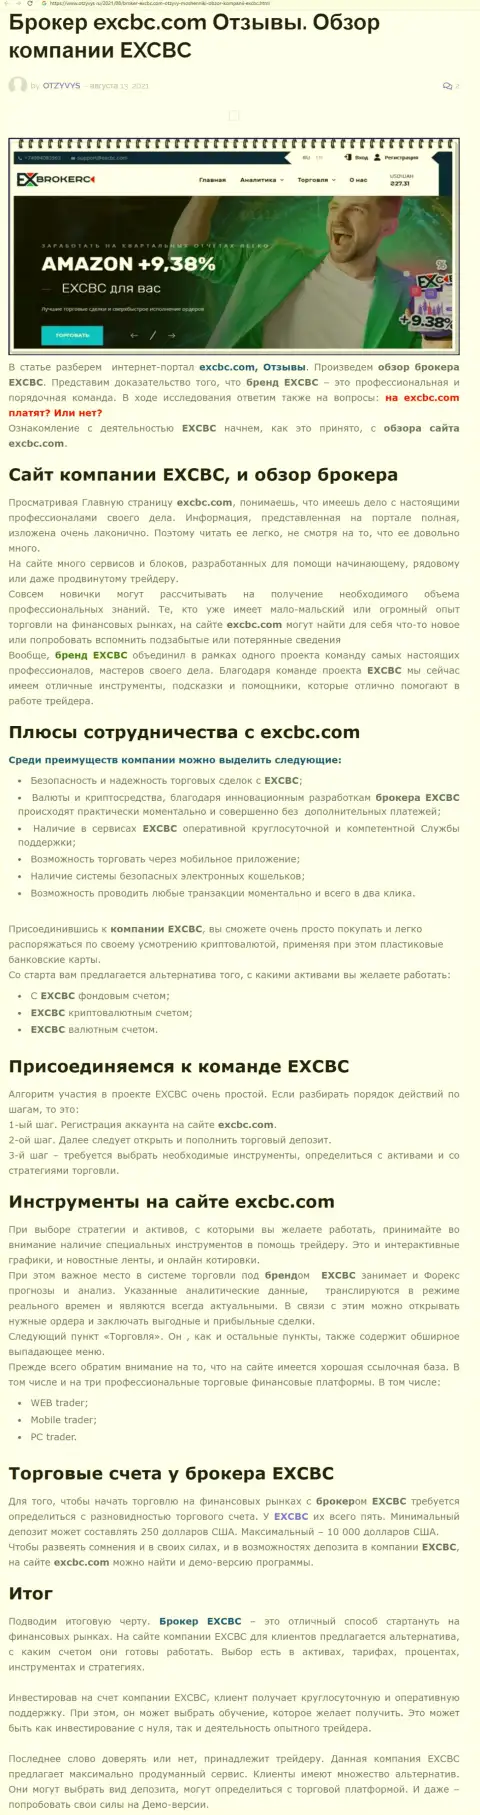 Обзорный материал о Форекс компании EXCBC на web-сайте otzyvys ru